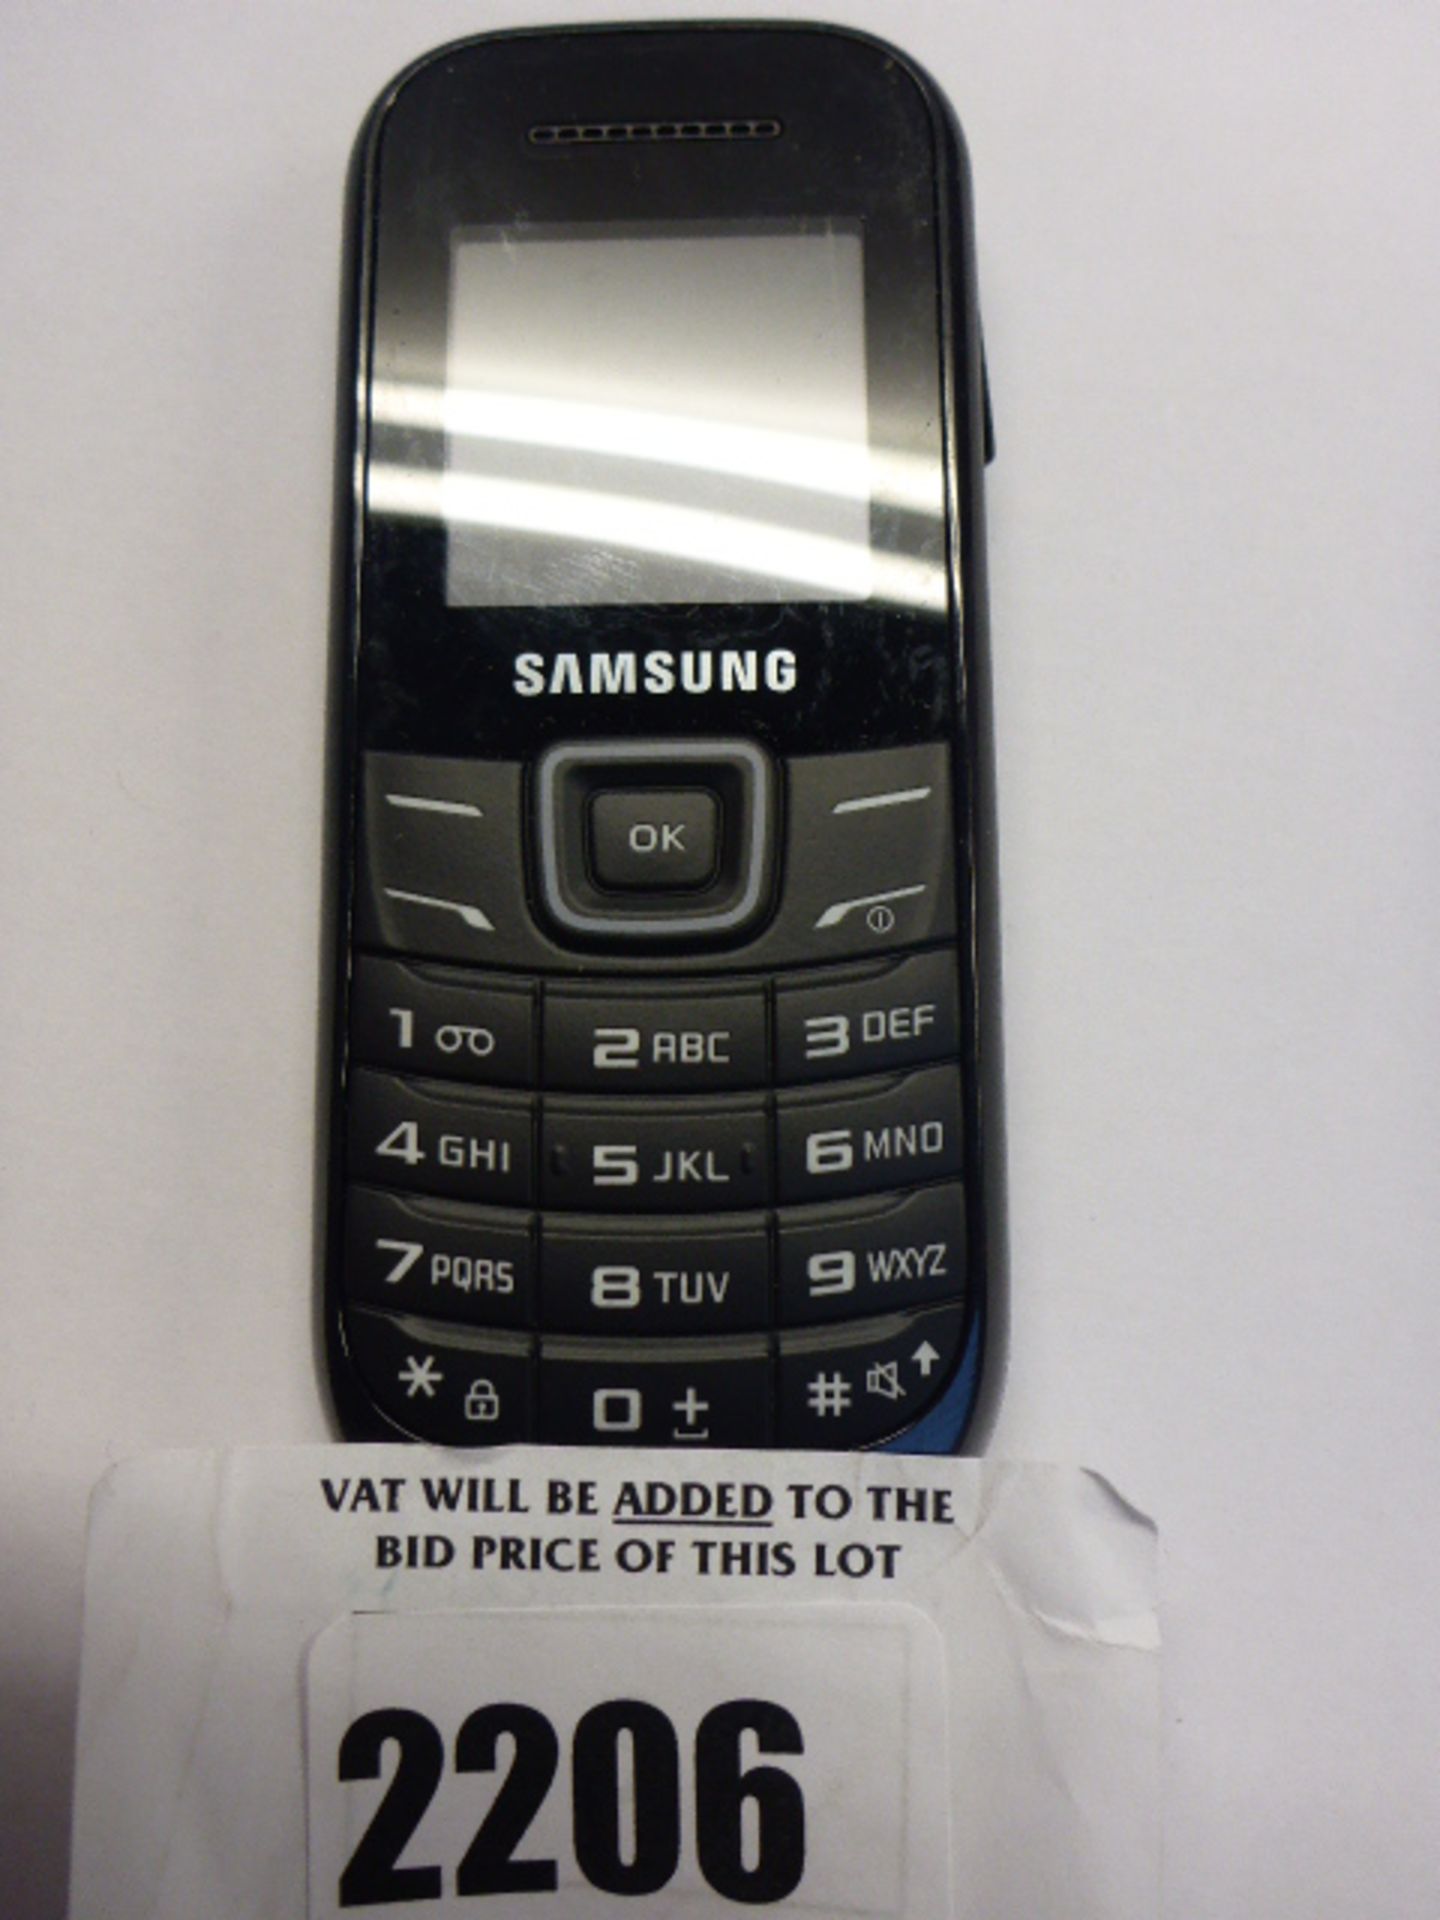 Samsung GT-E1200i mobile, no battery or cover.